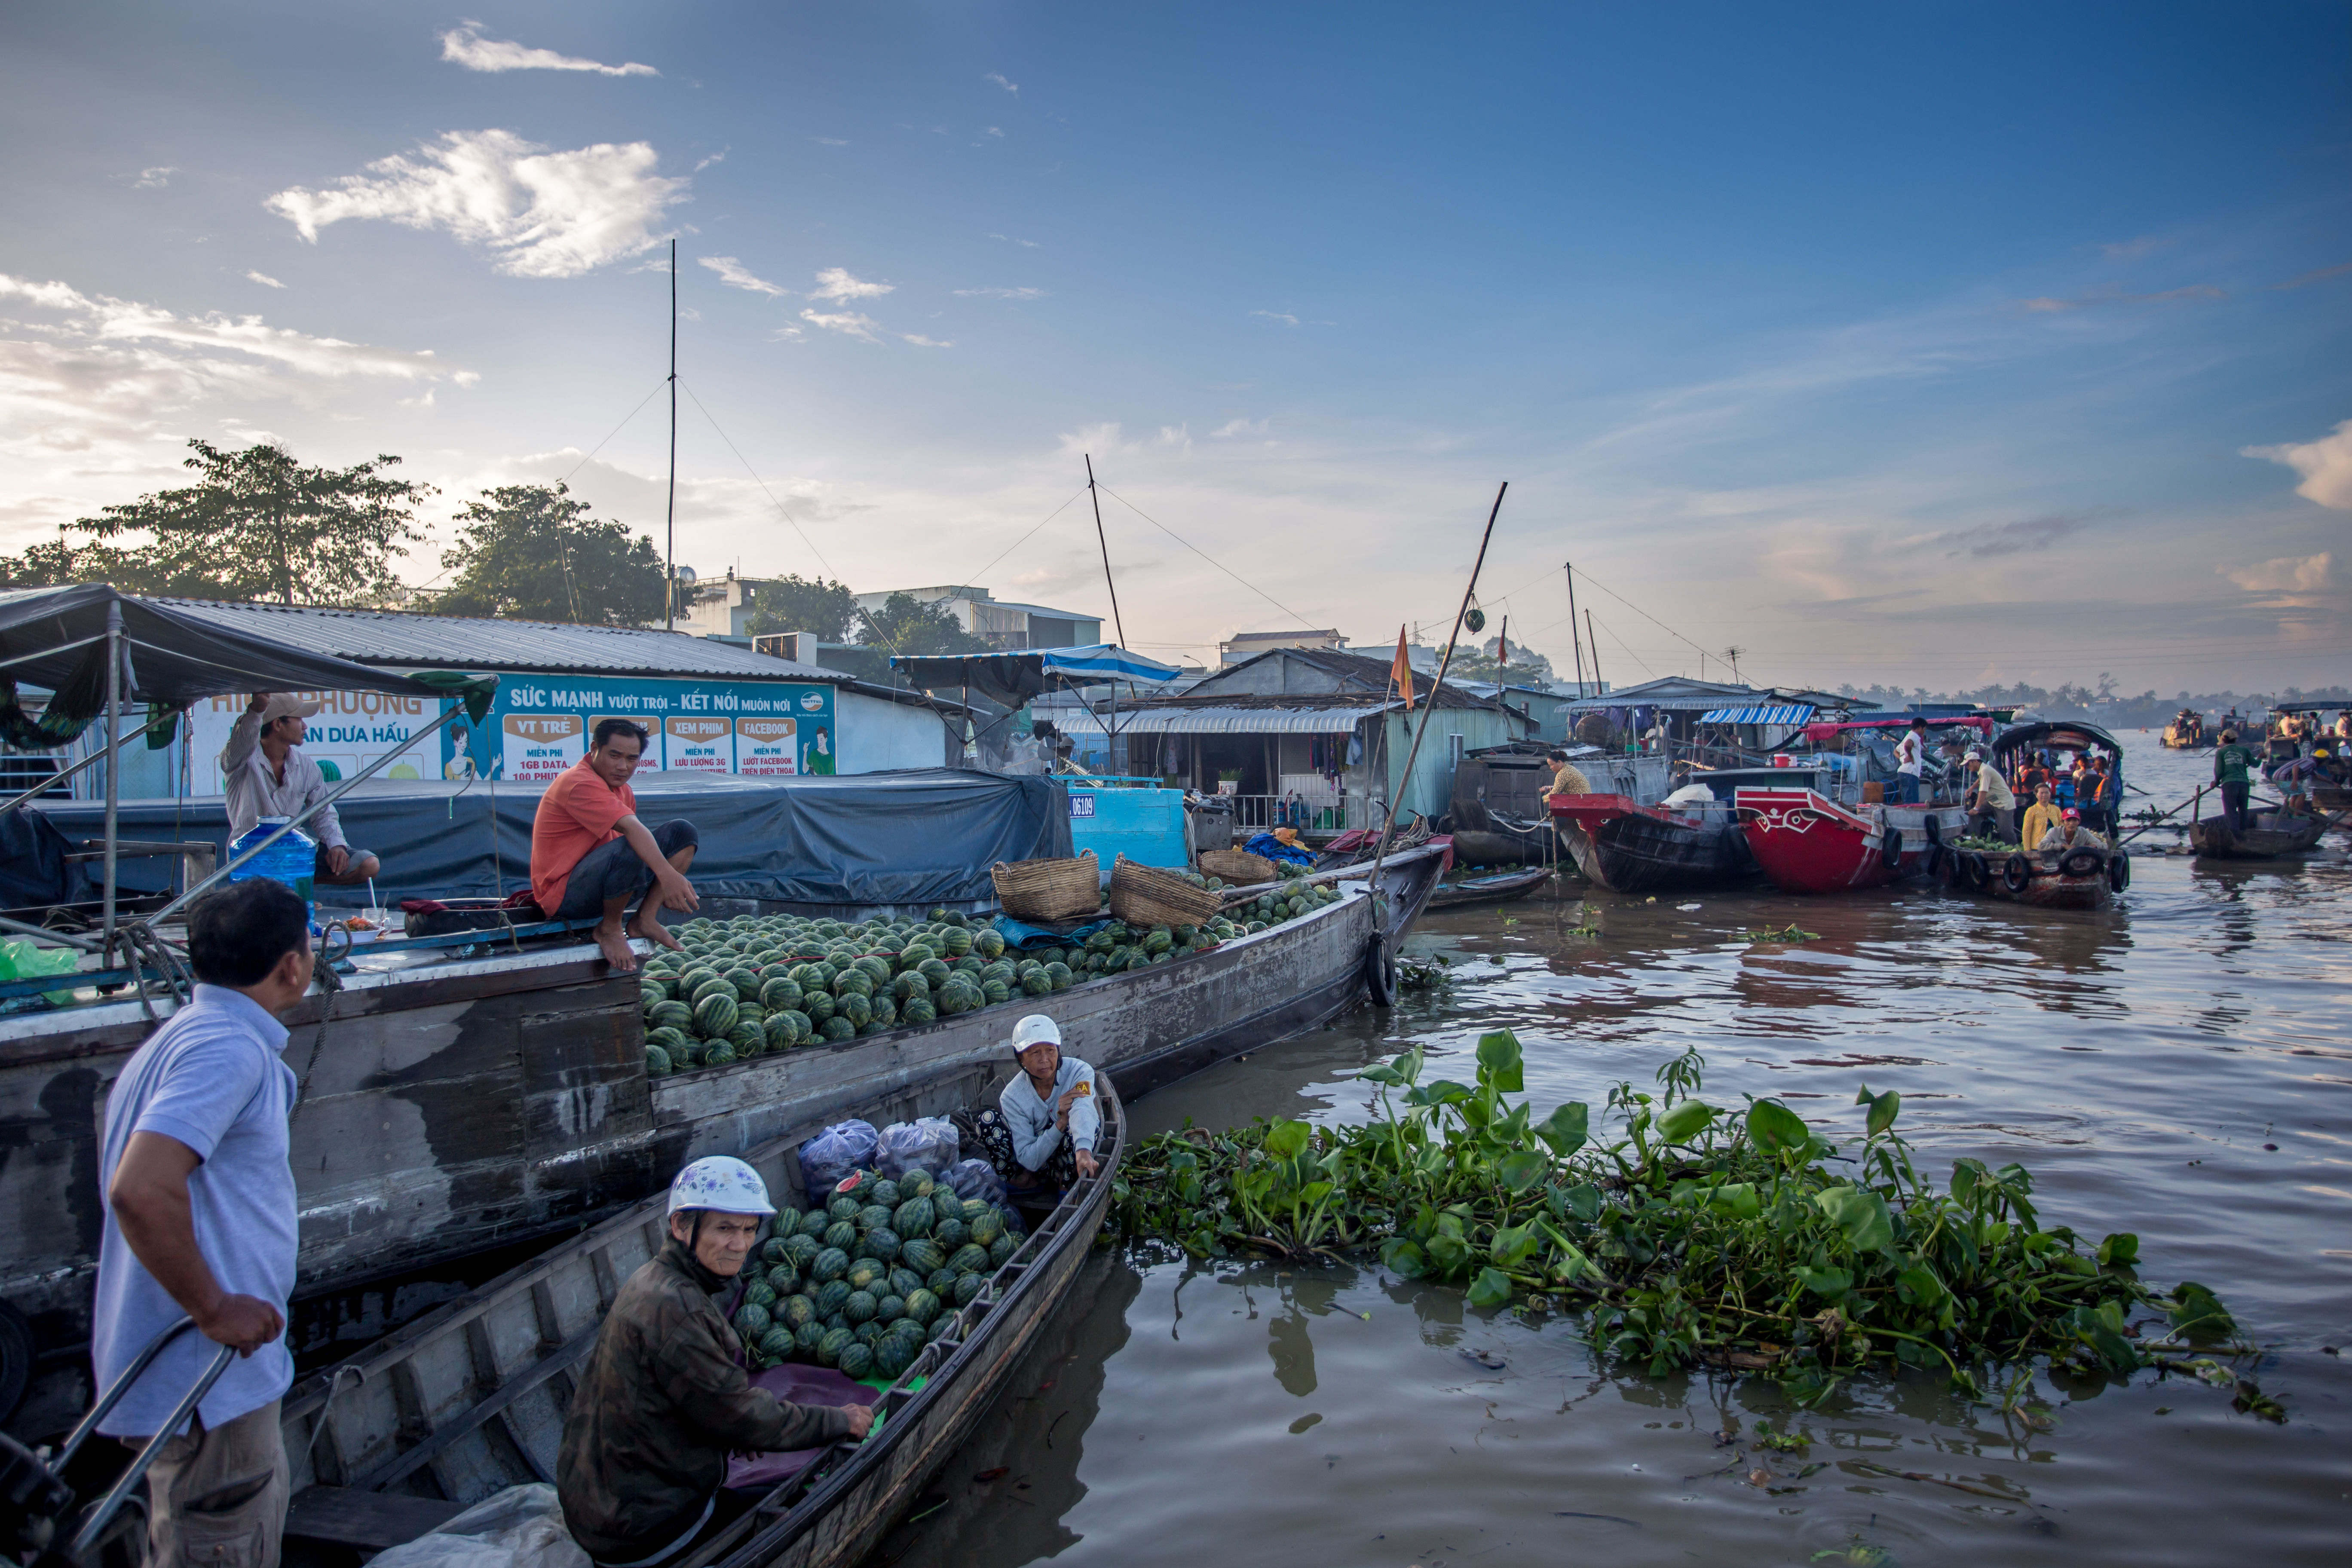 mekong delta cai rang floating market